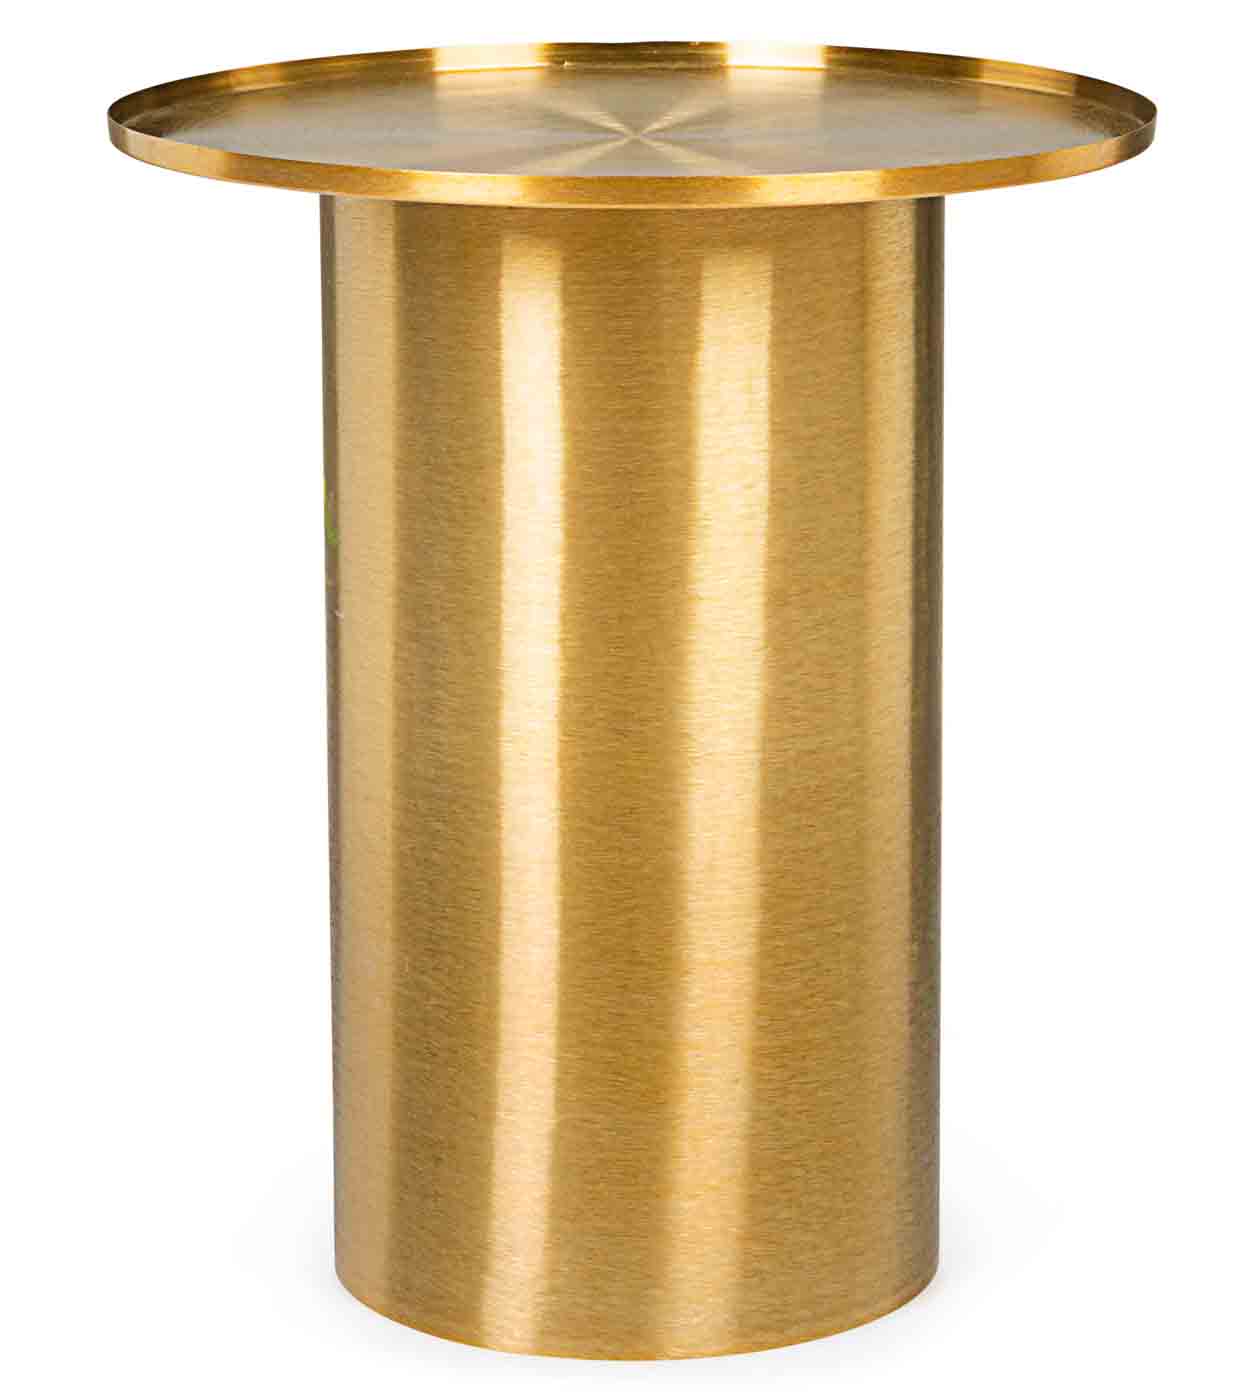 Stilvoller Beistelltisch Kalpita wurde aus einem Stahlgestell gefertigt. Das Gestell wurde vergoldet, welches dem Tisch sein ganz eigenes Design verleiht.